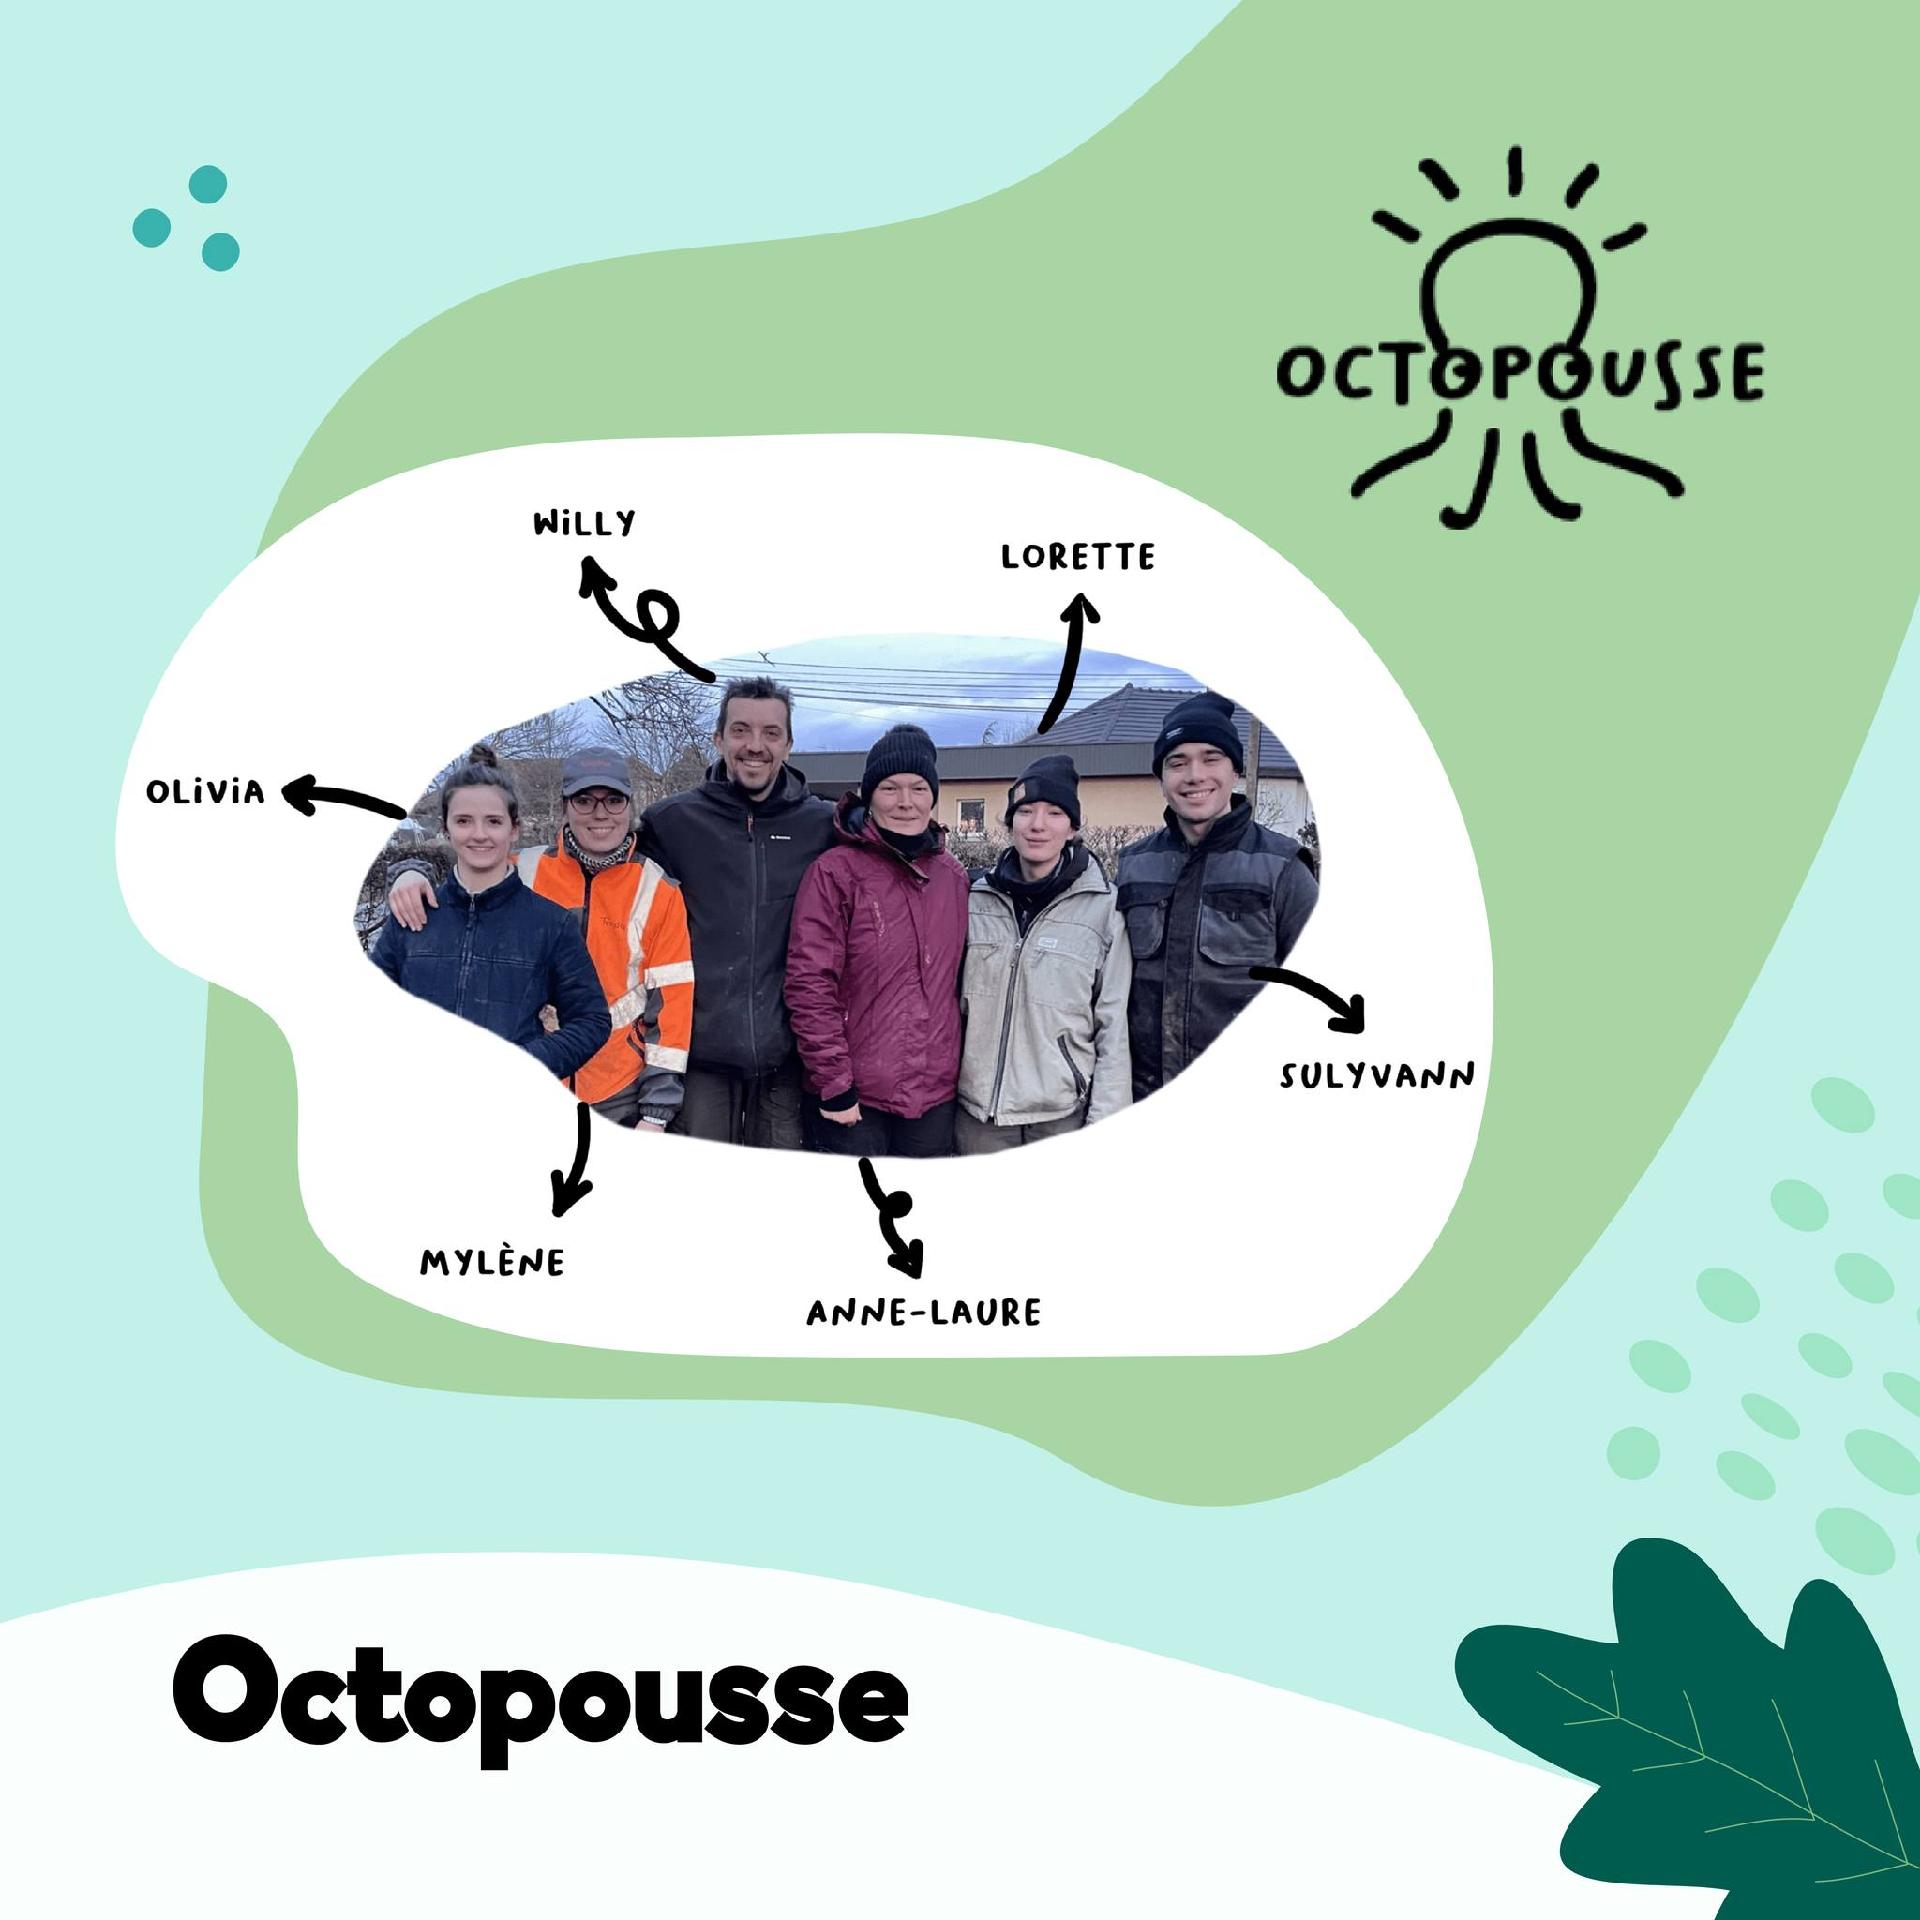 Octopousse